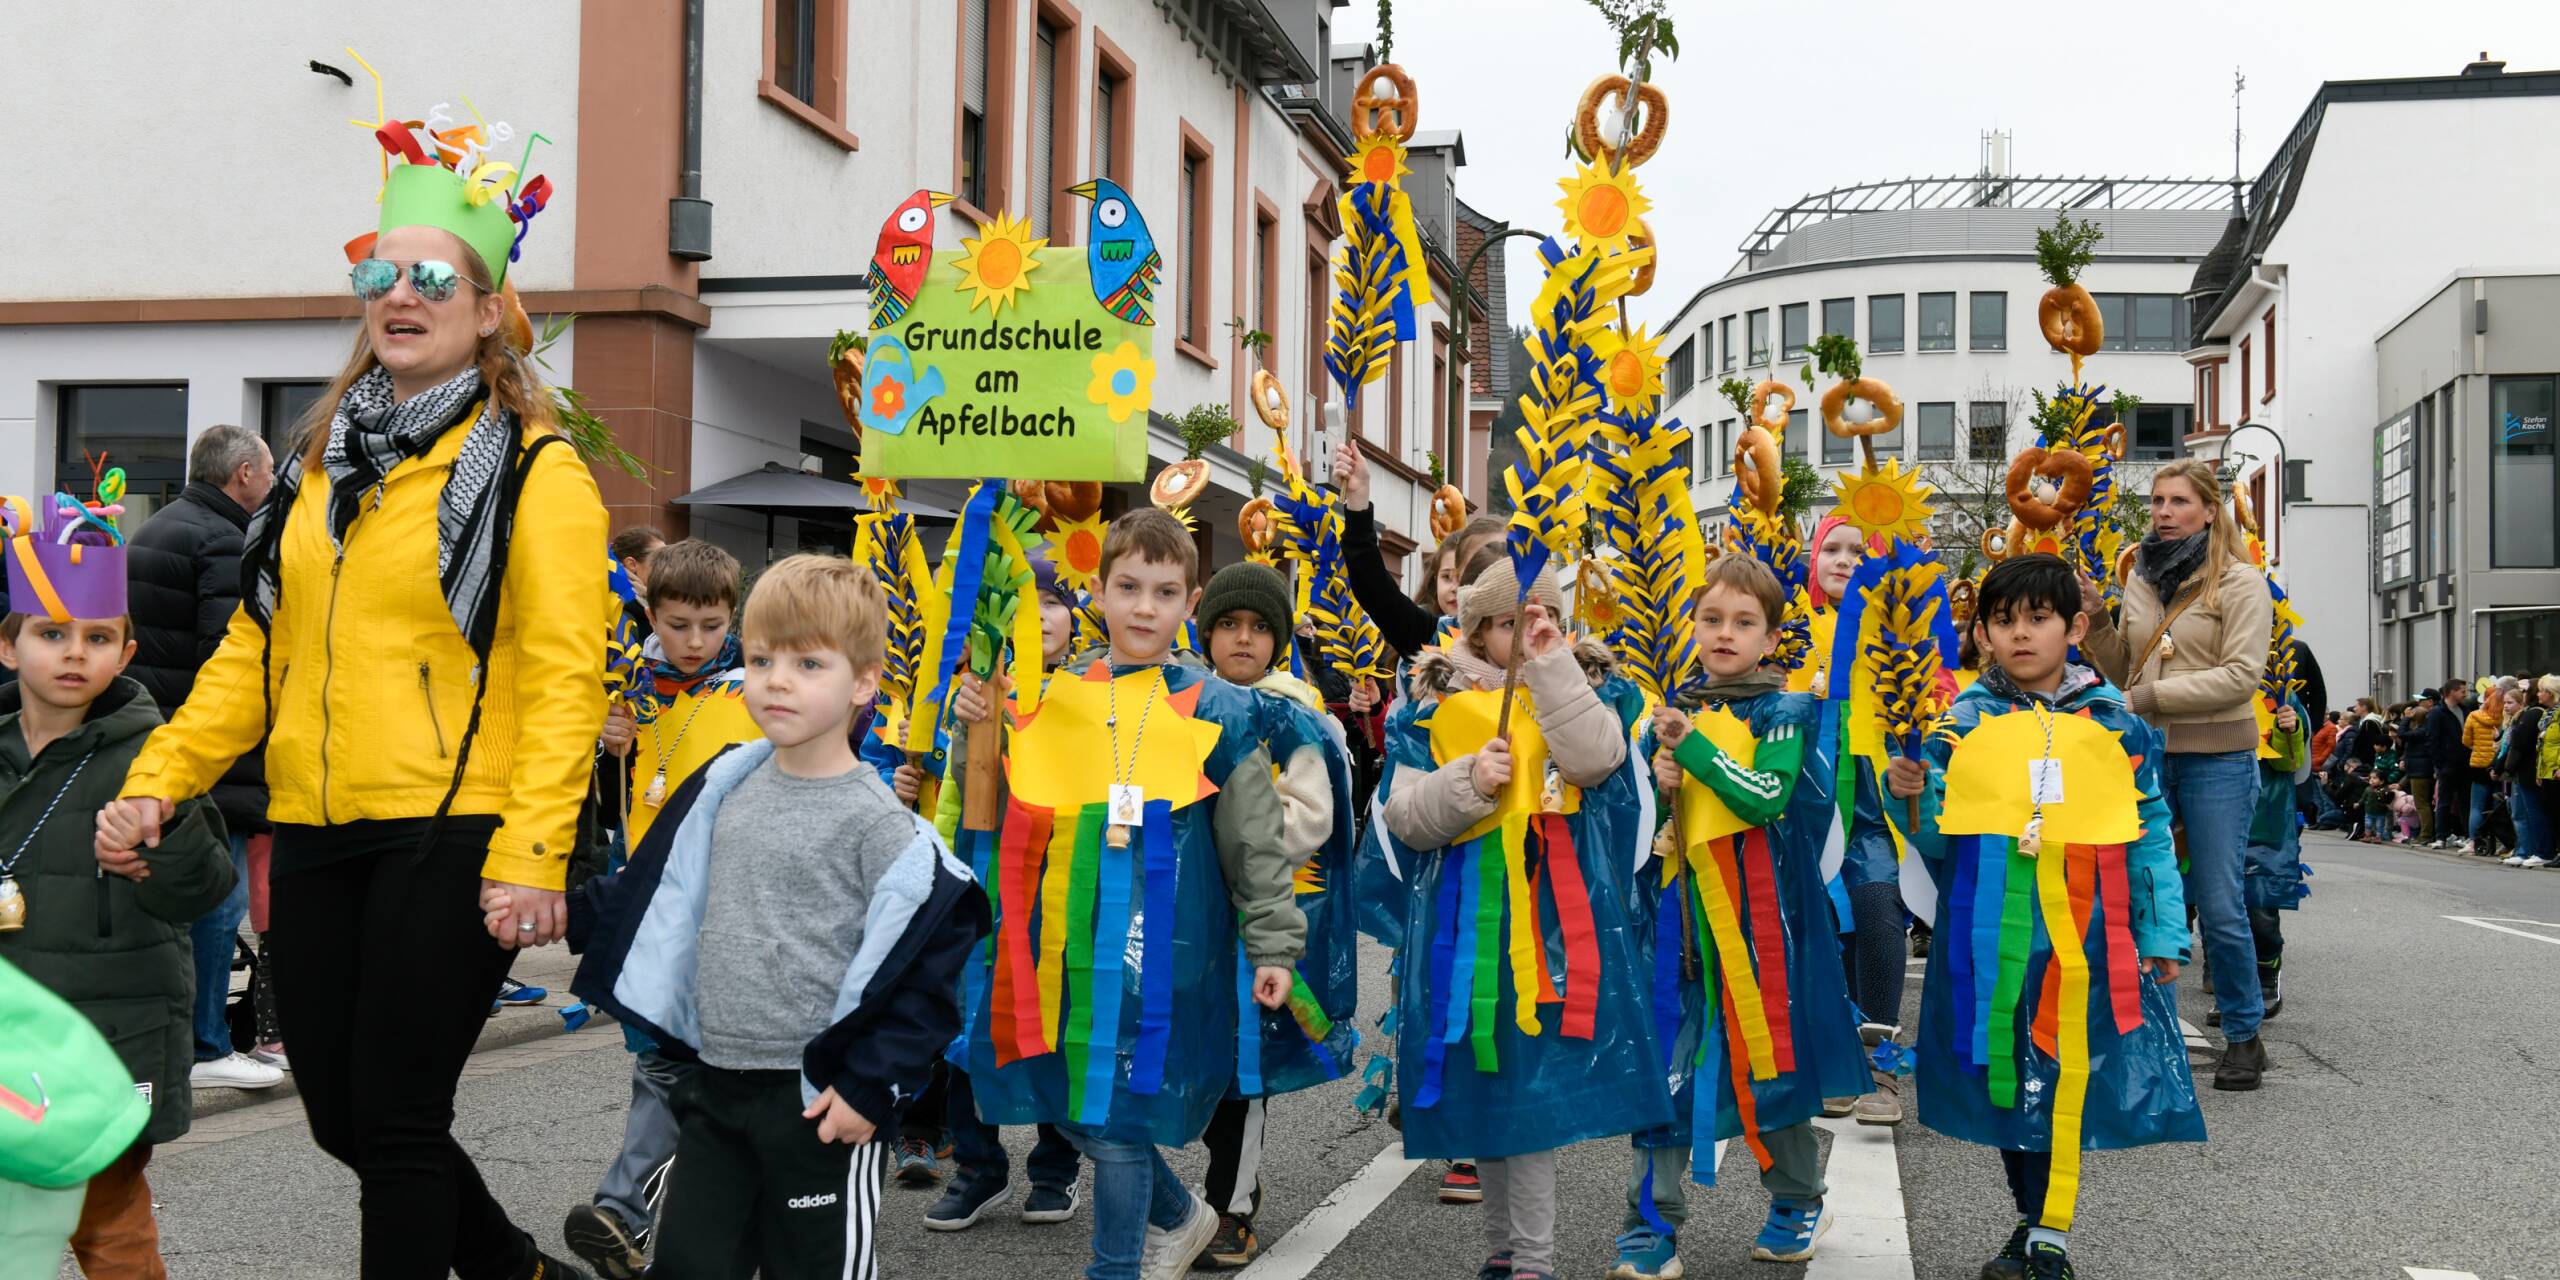 Die Grundschule am Apfelbach zeigte sich mit ihren Regenbogen-Kostümen besonders farbenfroh.